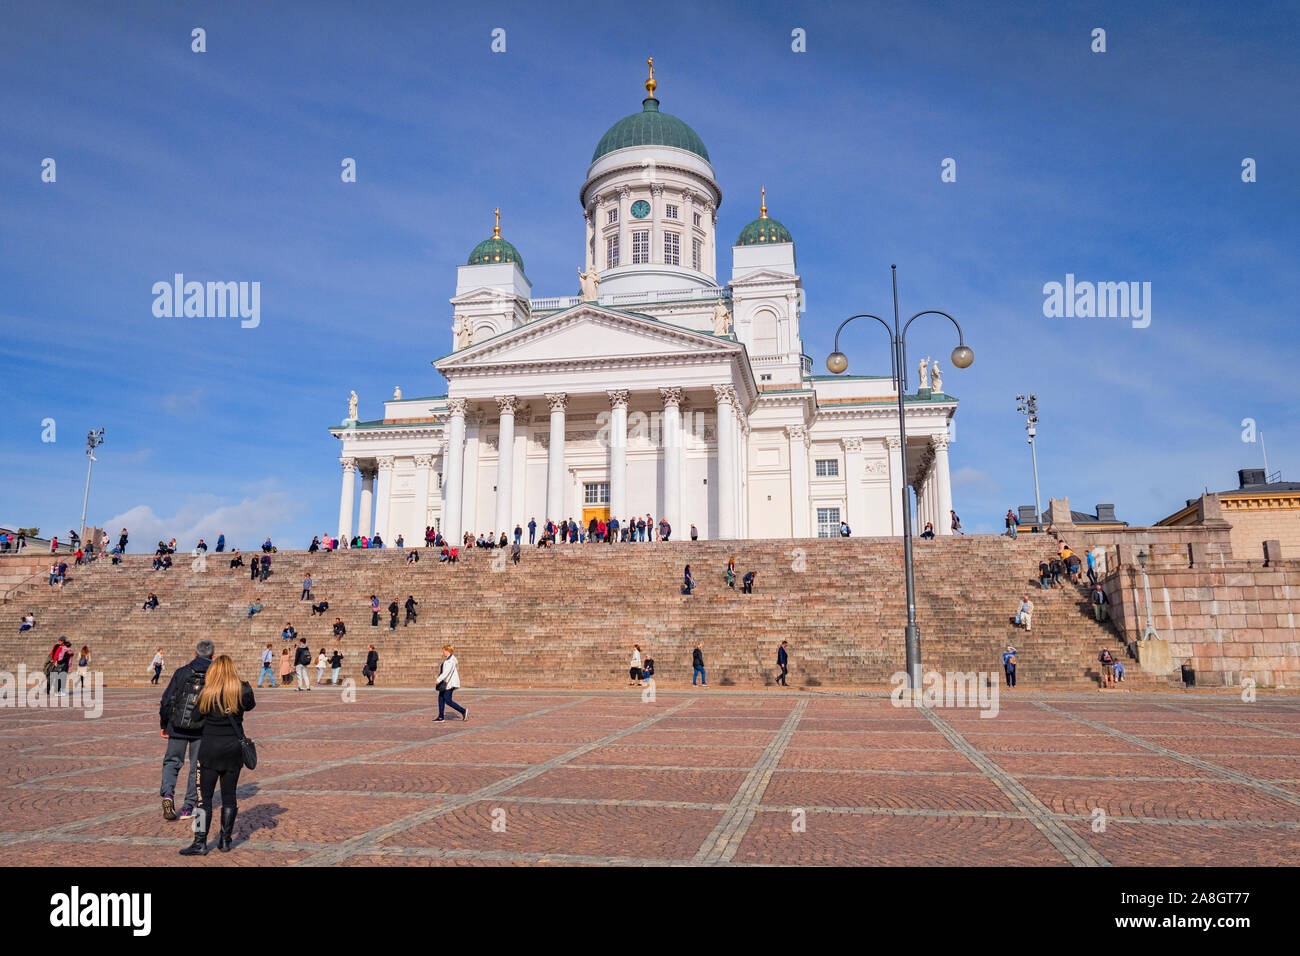 20 Septembre 2018 : Helsinki, Finlande - Touristes à Helsinki Cathédrale, l'Église évangélique luthérienne de Finlande cathédrale du diocèse de Helsinki, à... Banque D'Images